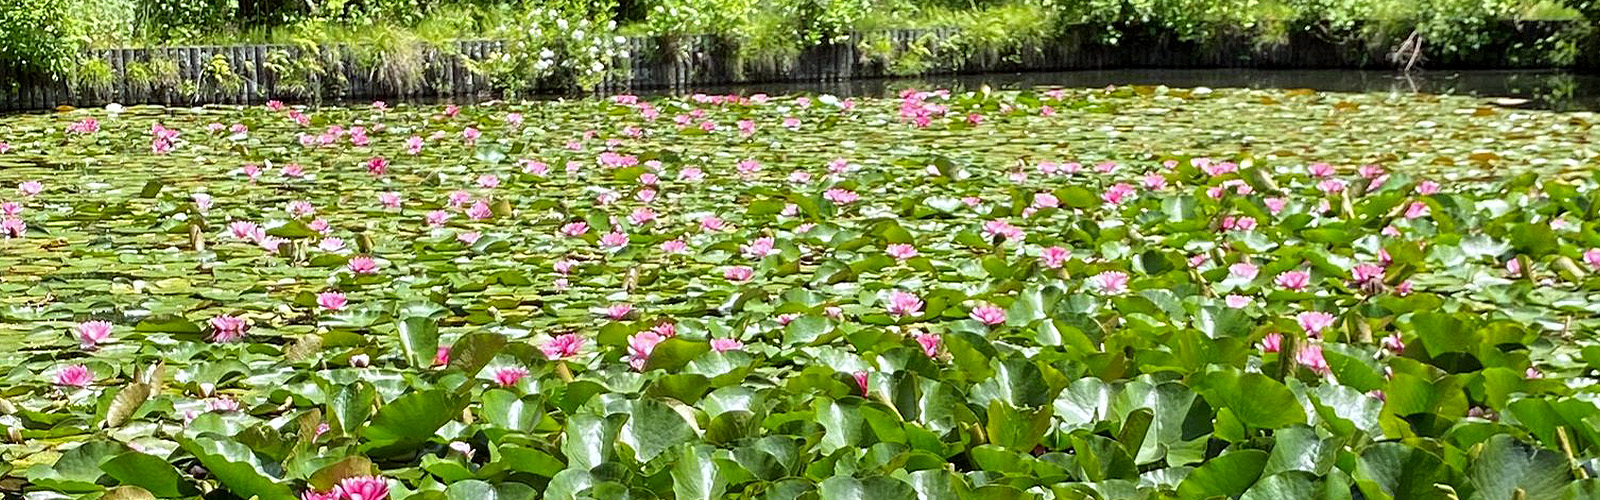 蓮の花が広がる池の情景